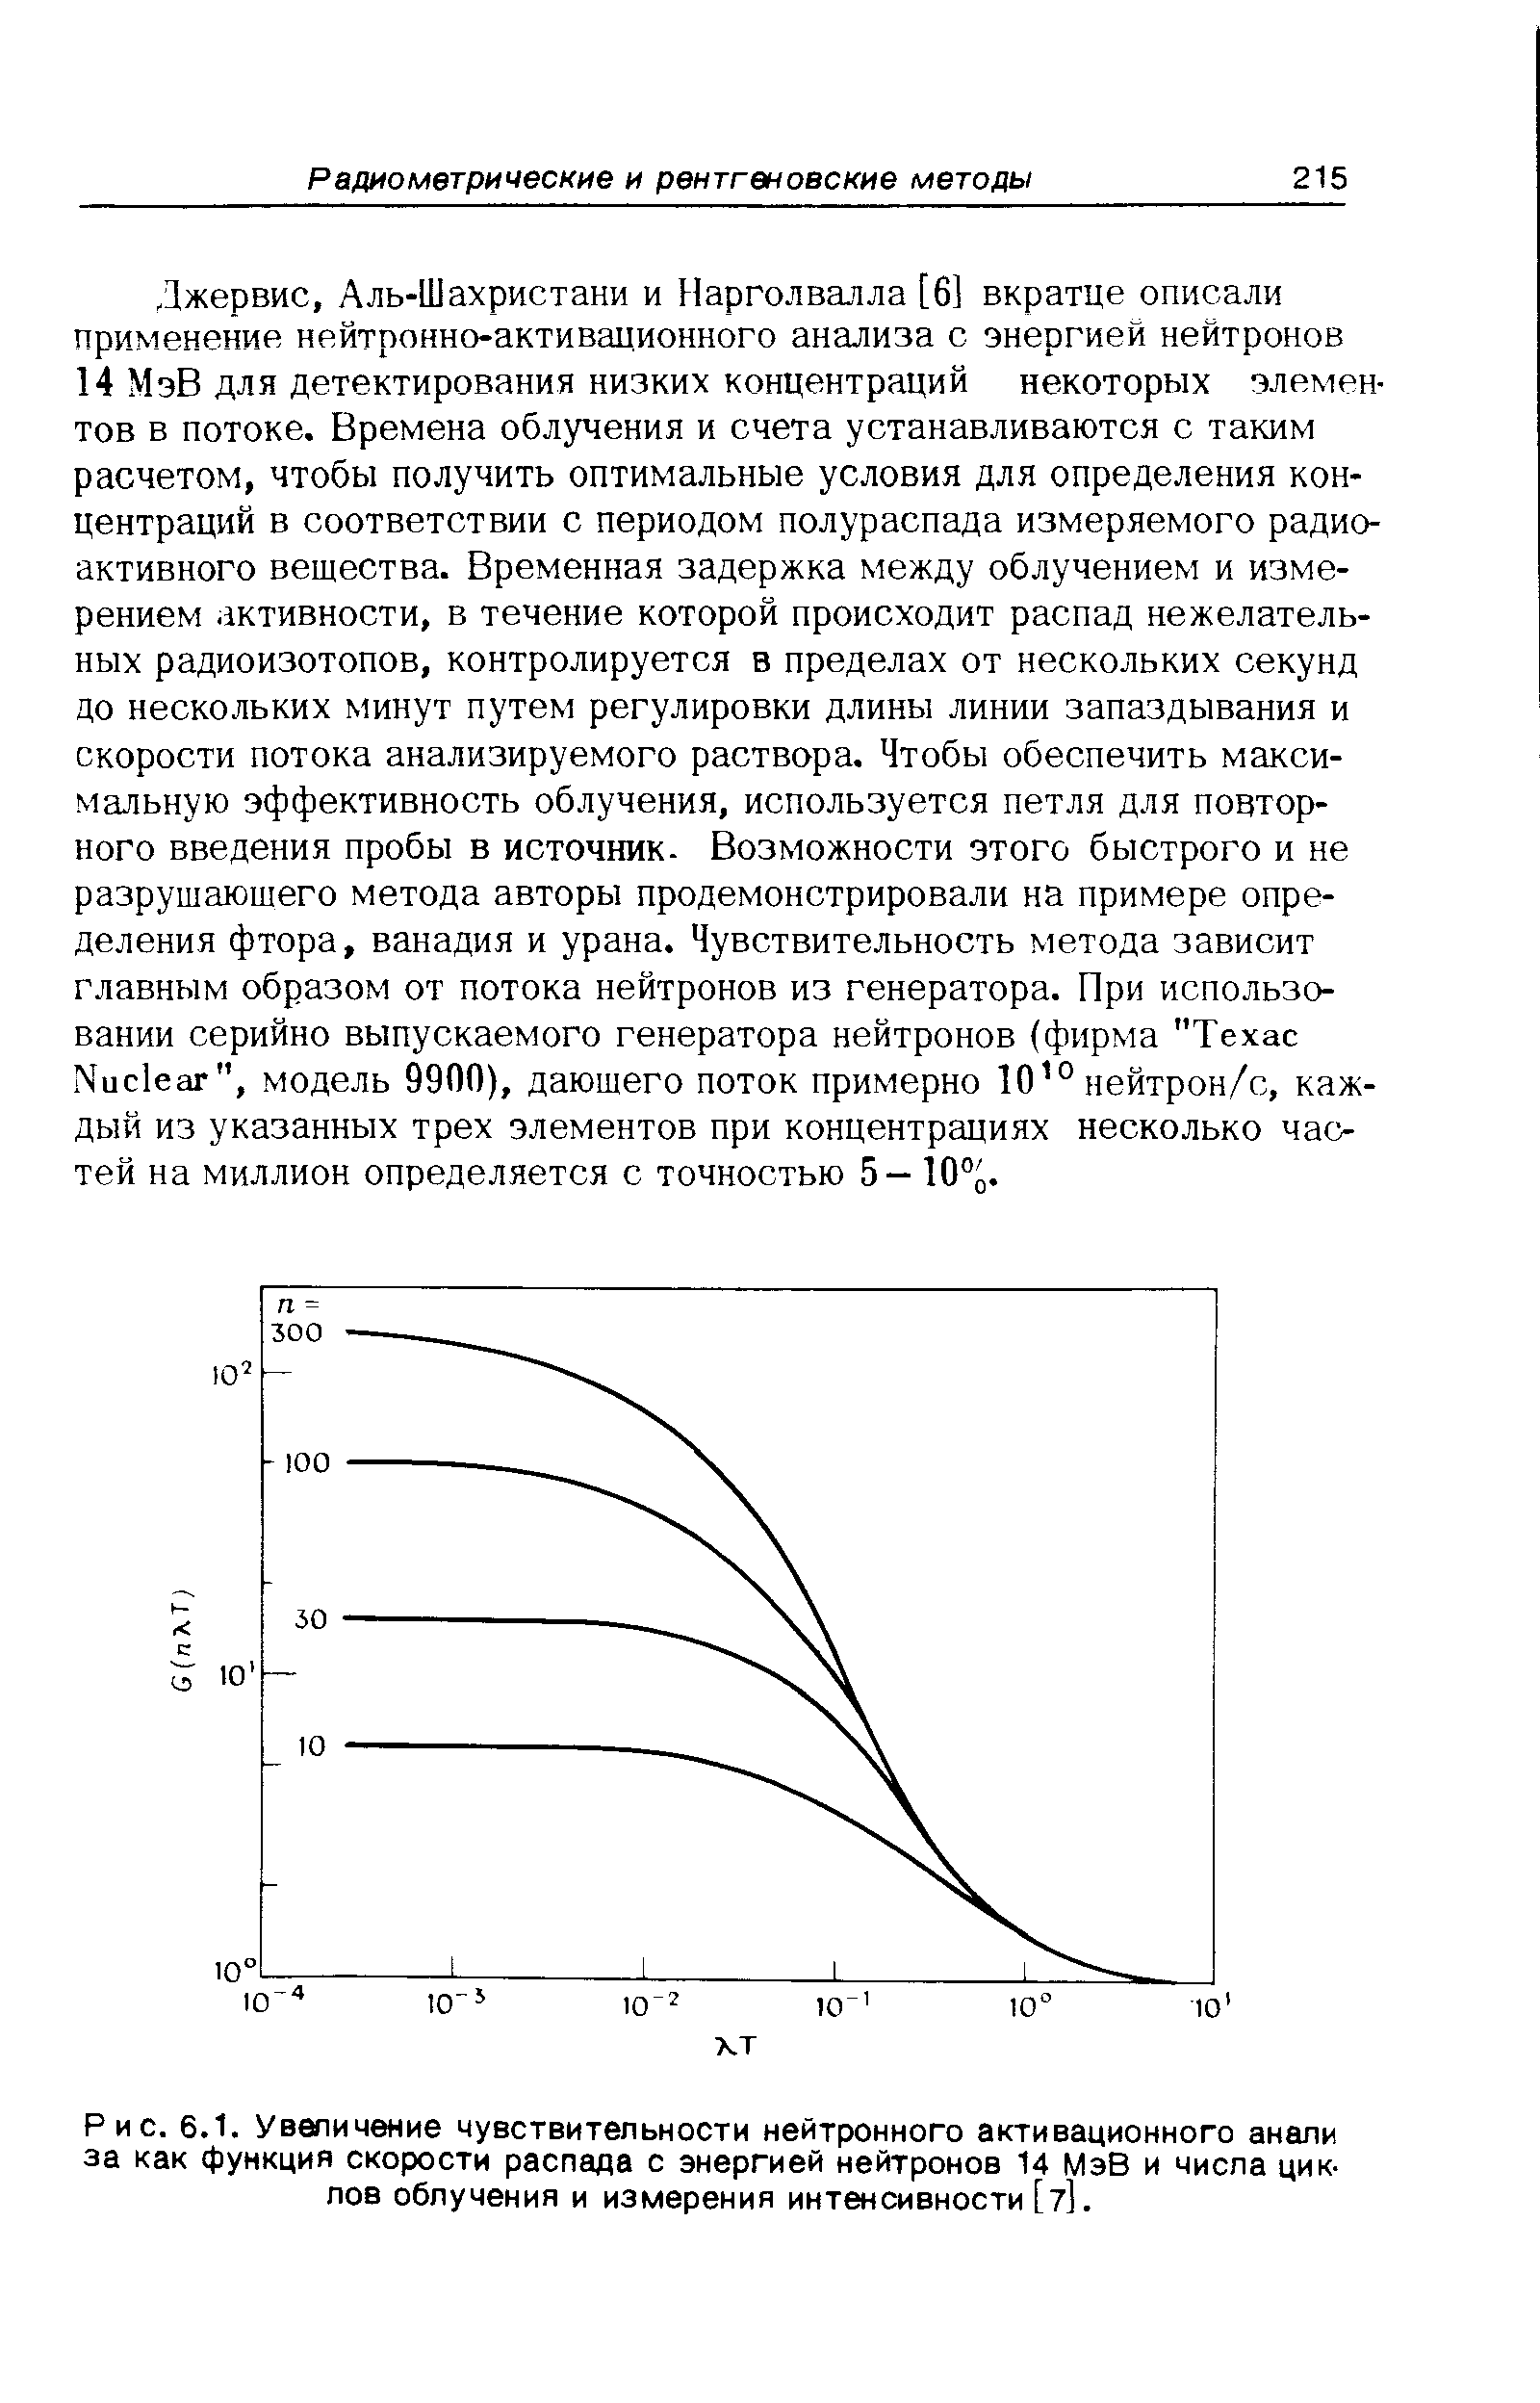 Рис. 6.1. Увеличение чувствительности нейтронного активационного анали за как функция скорости распада с энергией нейтронов 14 МэВ и числа циклов облучения и измерения интенсивности [7].